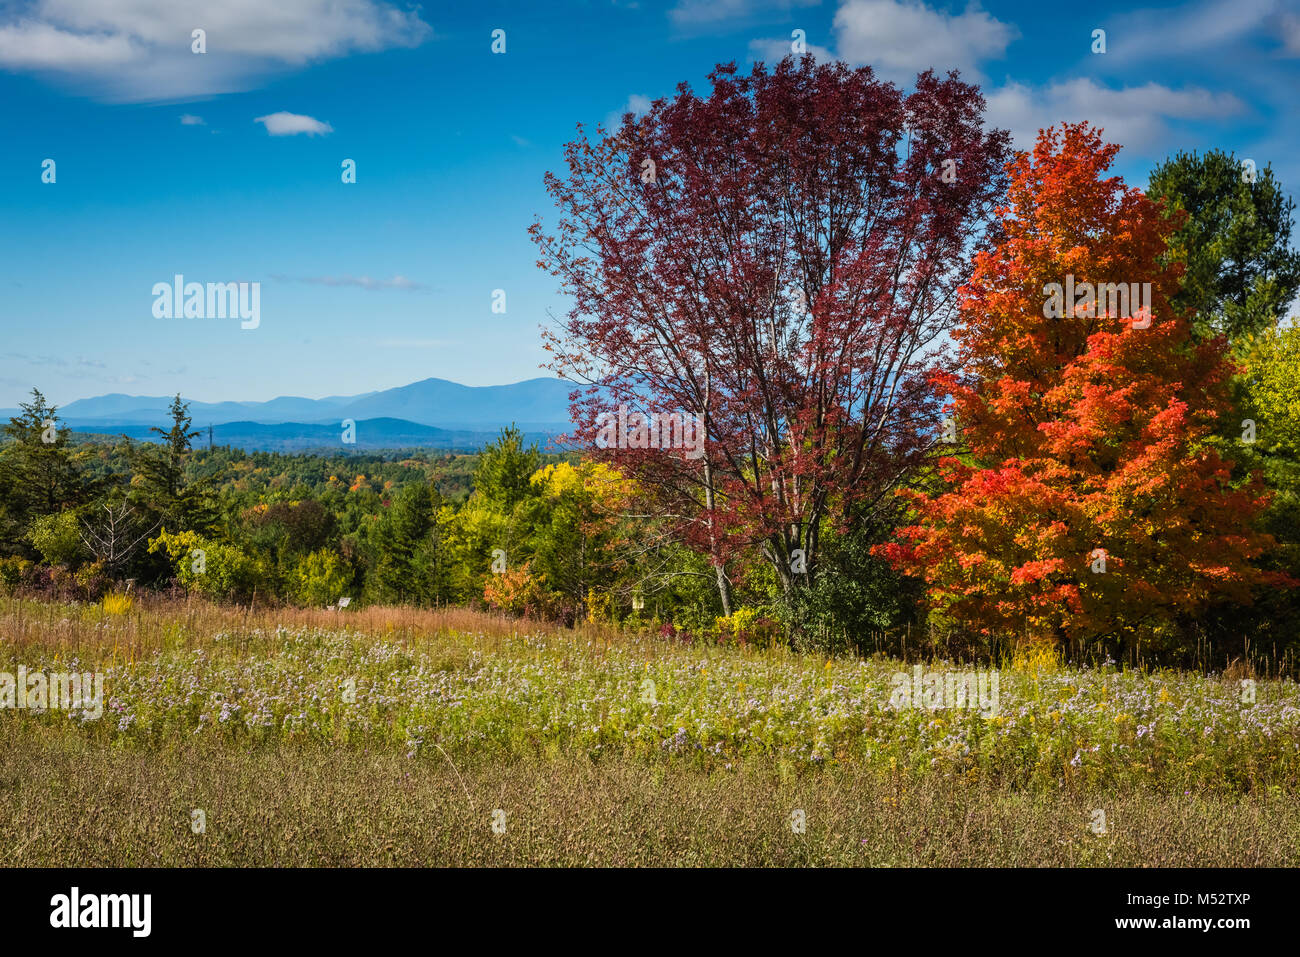 Prados de flores y follaje de otoño en el condado de Columbia. Proyecto Wildflower, una iniciativa del Departamento de Transporte de Nueva York, promueve roadsi Foto de stock